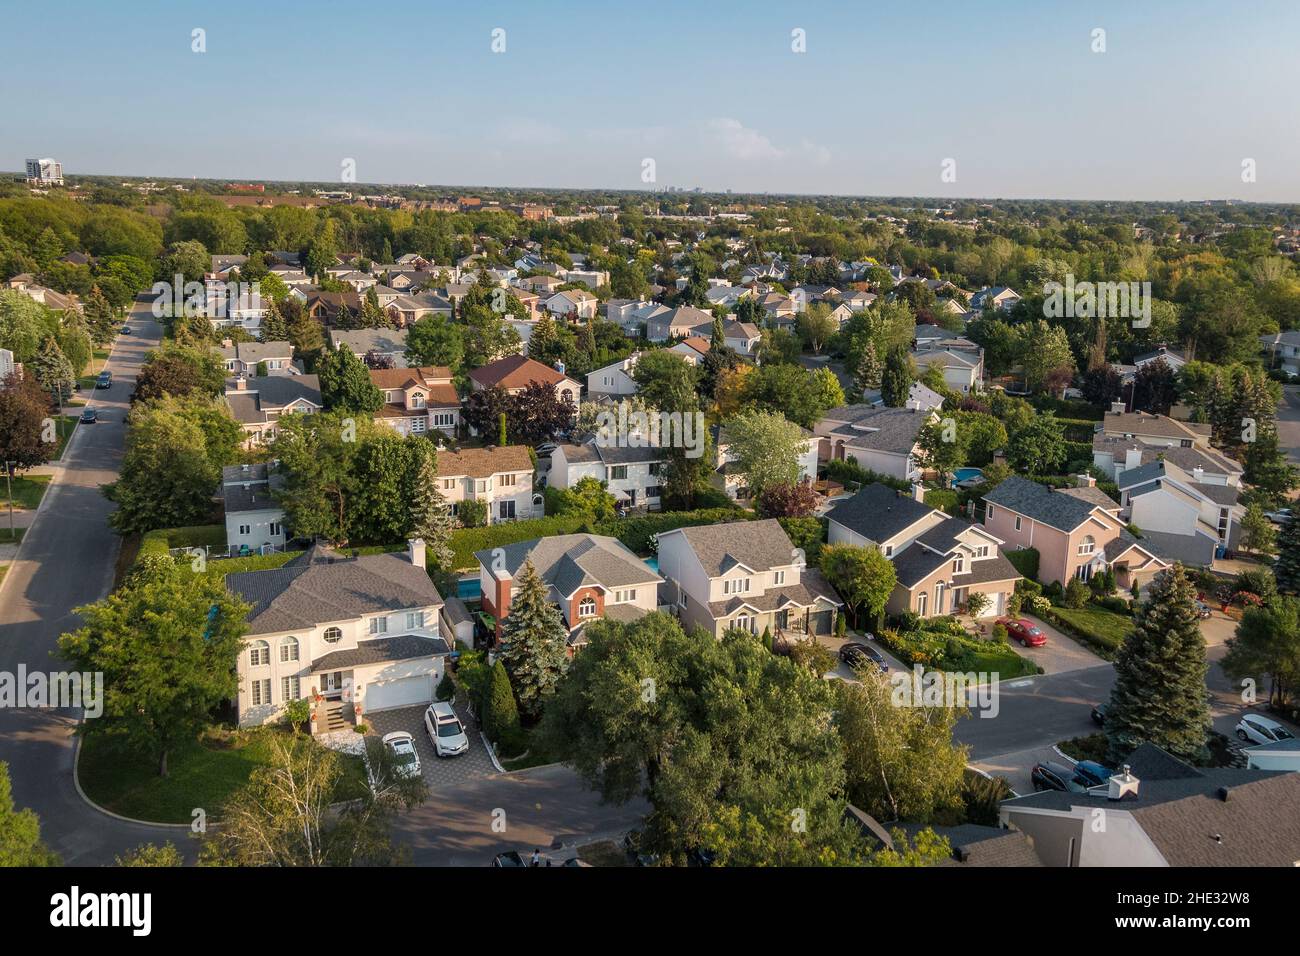 Vue aérienne des maisons et des rues dans le beau quartier résidentiel de Montréal, Québec, Canada.Concept immobilier, immobilier et immobilier. Banque D'Images